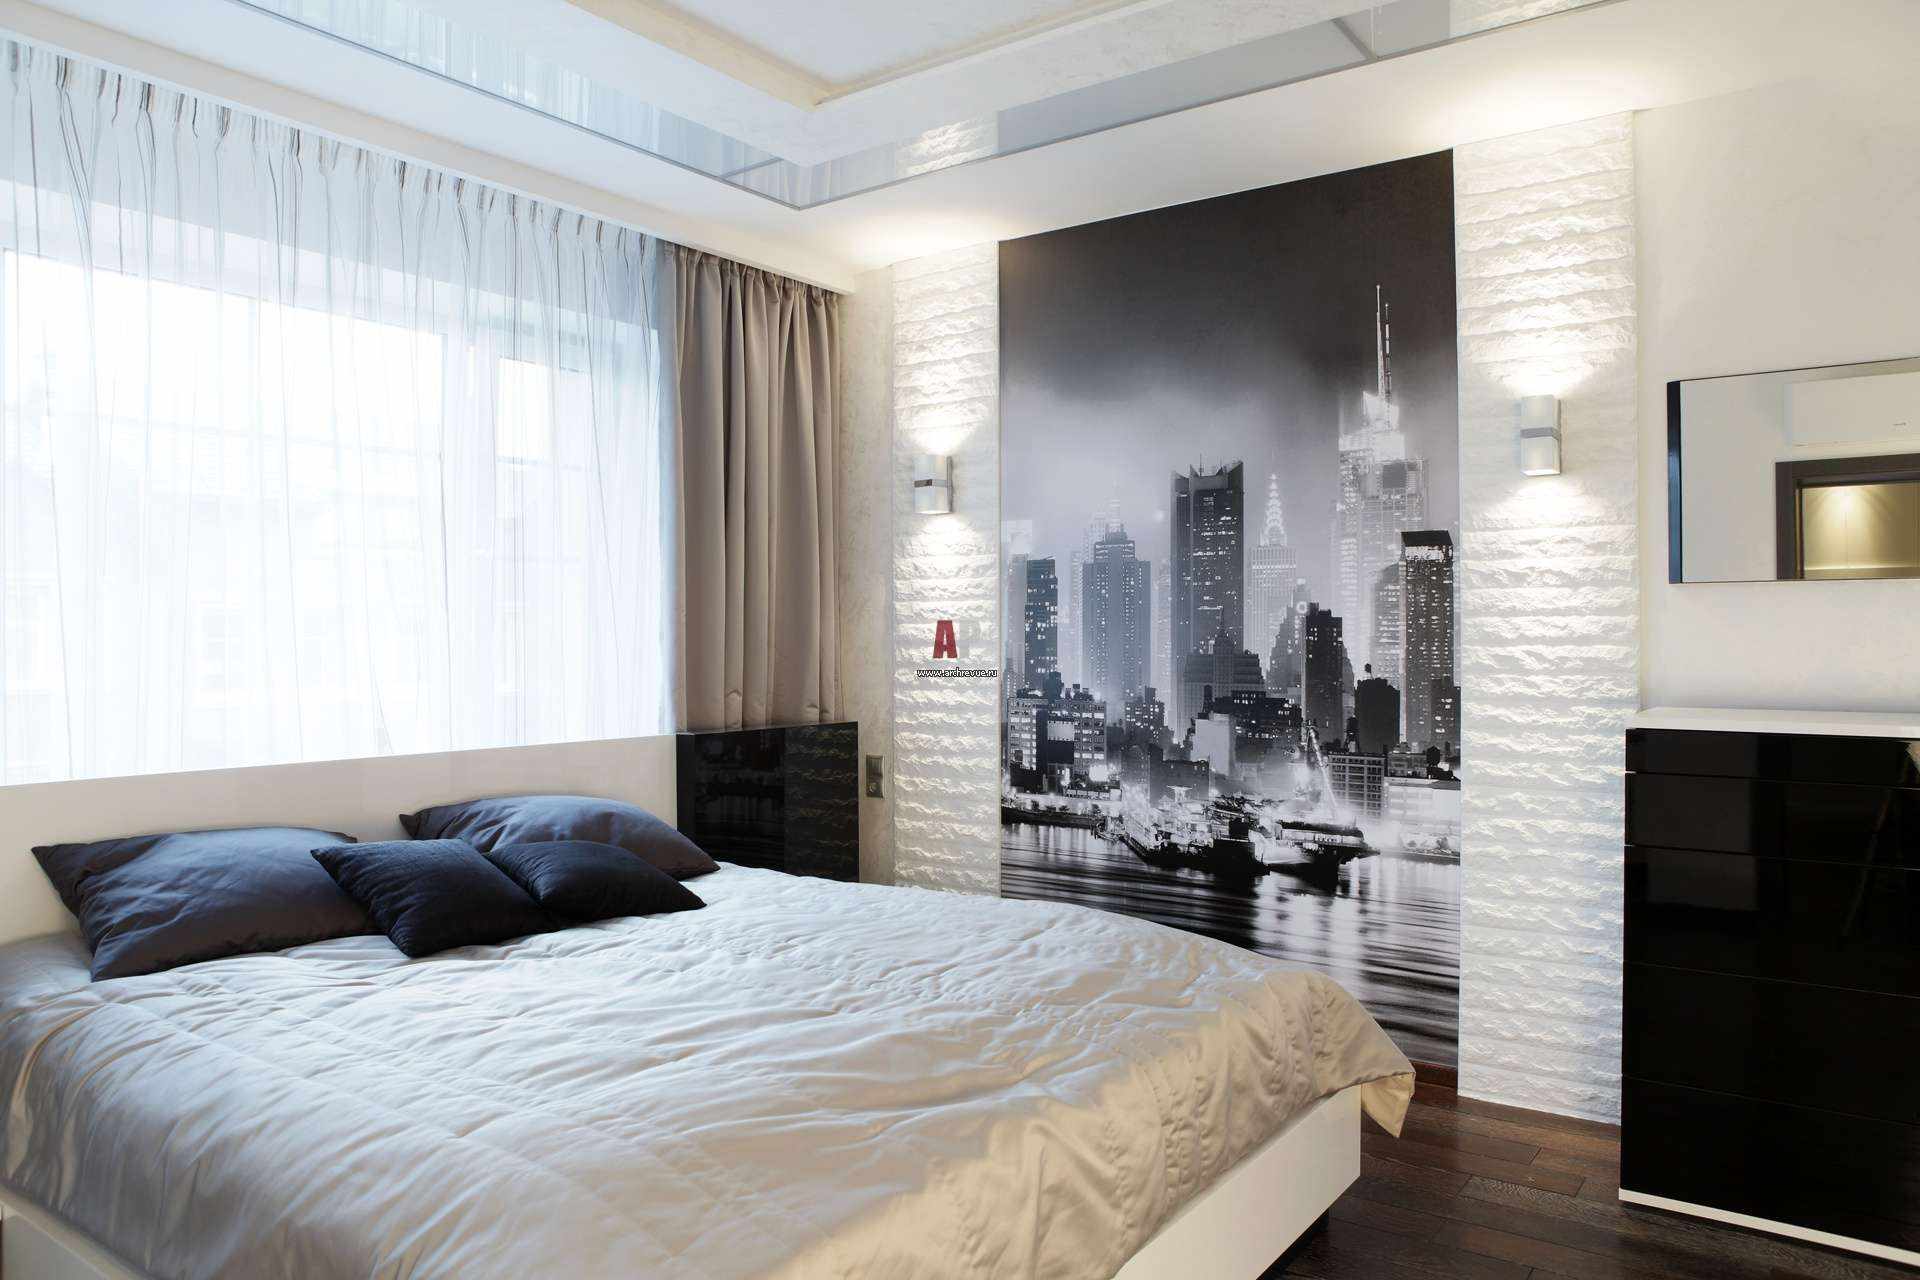 l'idea di una brillante decorazione dello stile delle pareti della camera da letto